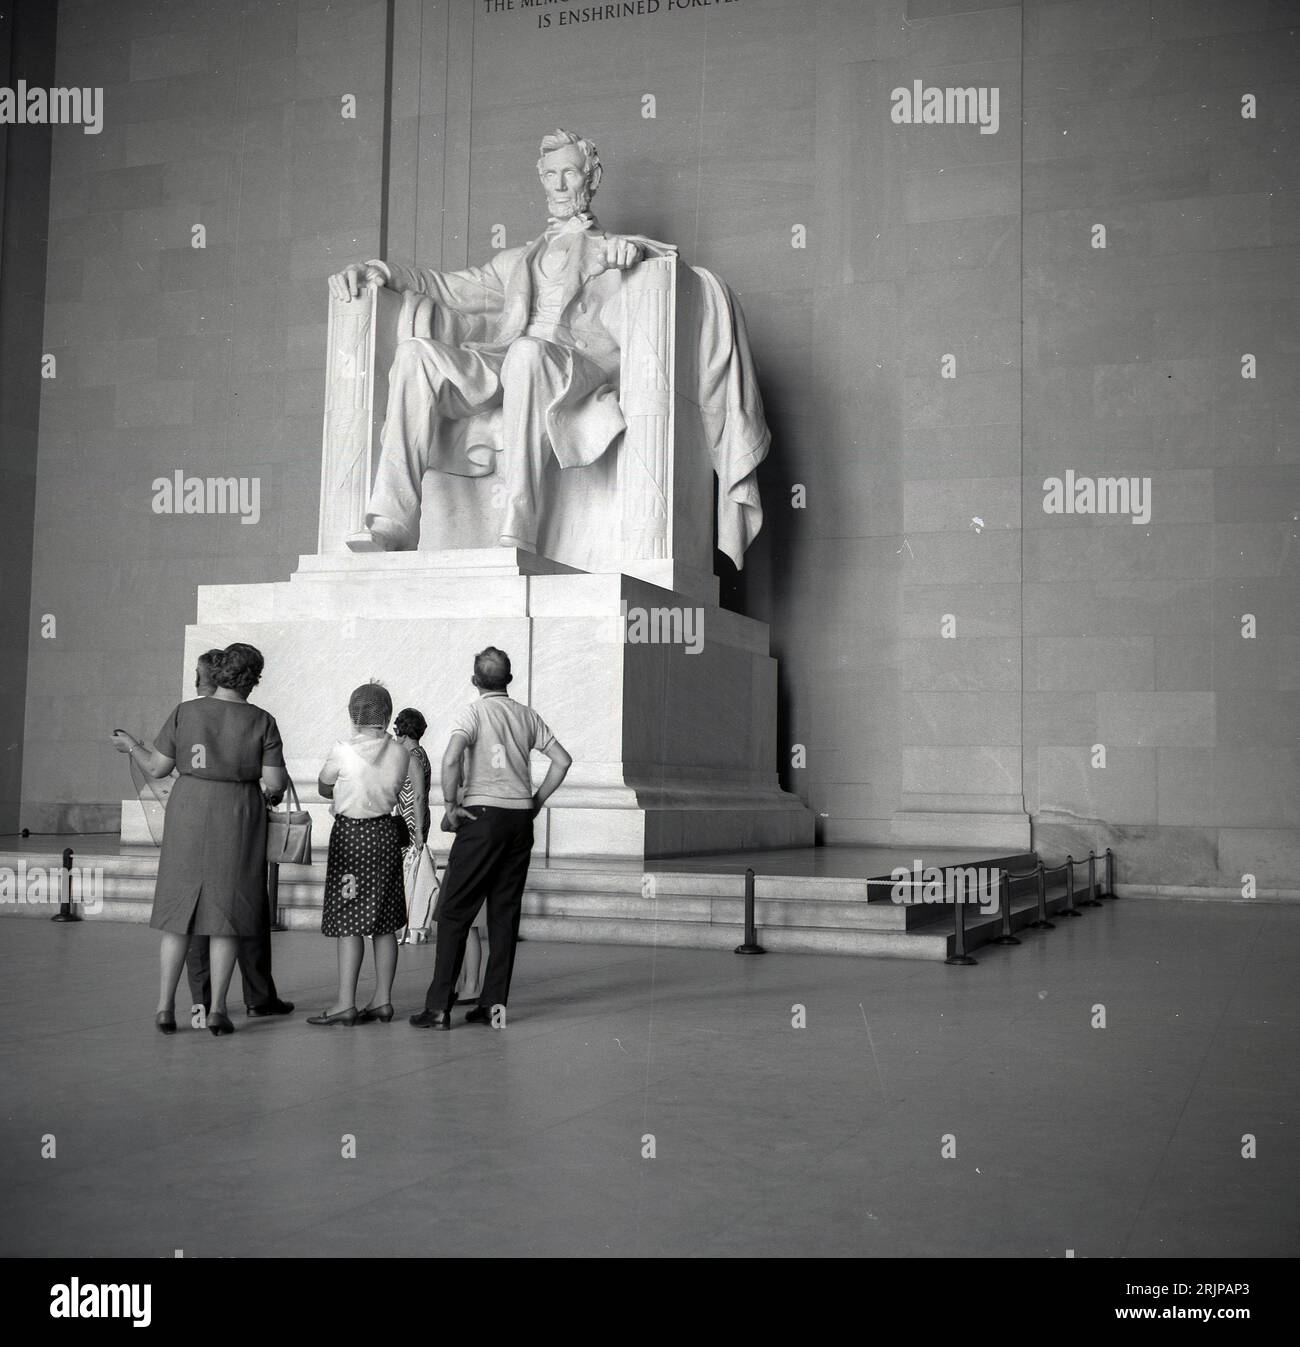 Anni '1960, storica, una famiglia che guarda la statua di Arabham Lincoln all'interno del Lincoln Memorial sulla National mail, Washington DC, USA. Progettata da Daniel Chester French, la grande statua in marmo del XVI presidente fu completata nel 1920, con una presentazione formale nel 1922. Foto Stock